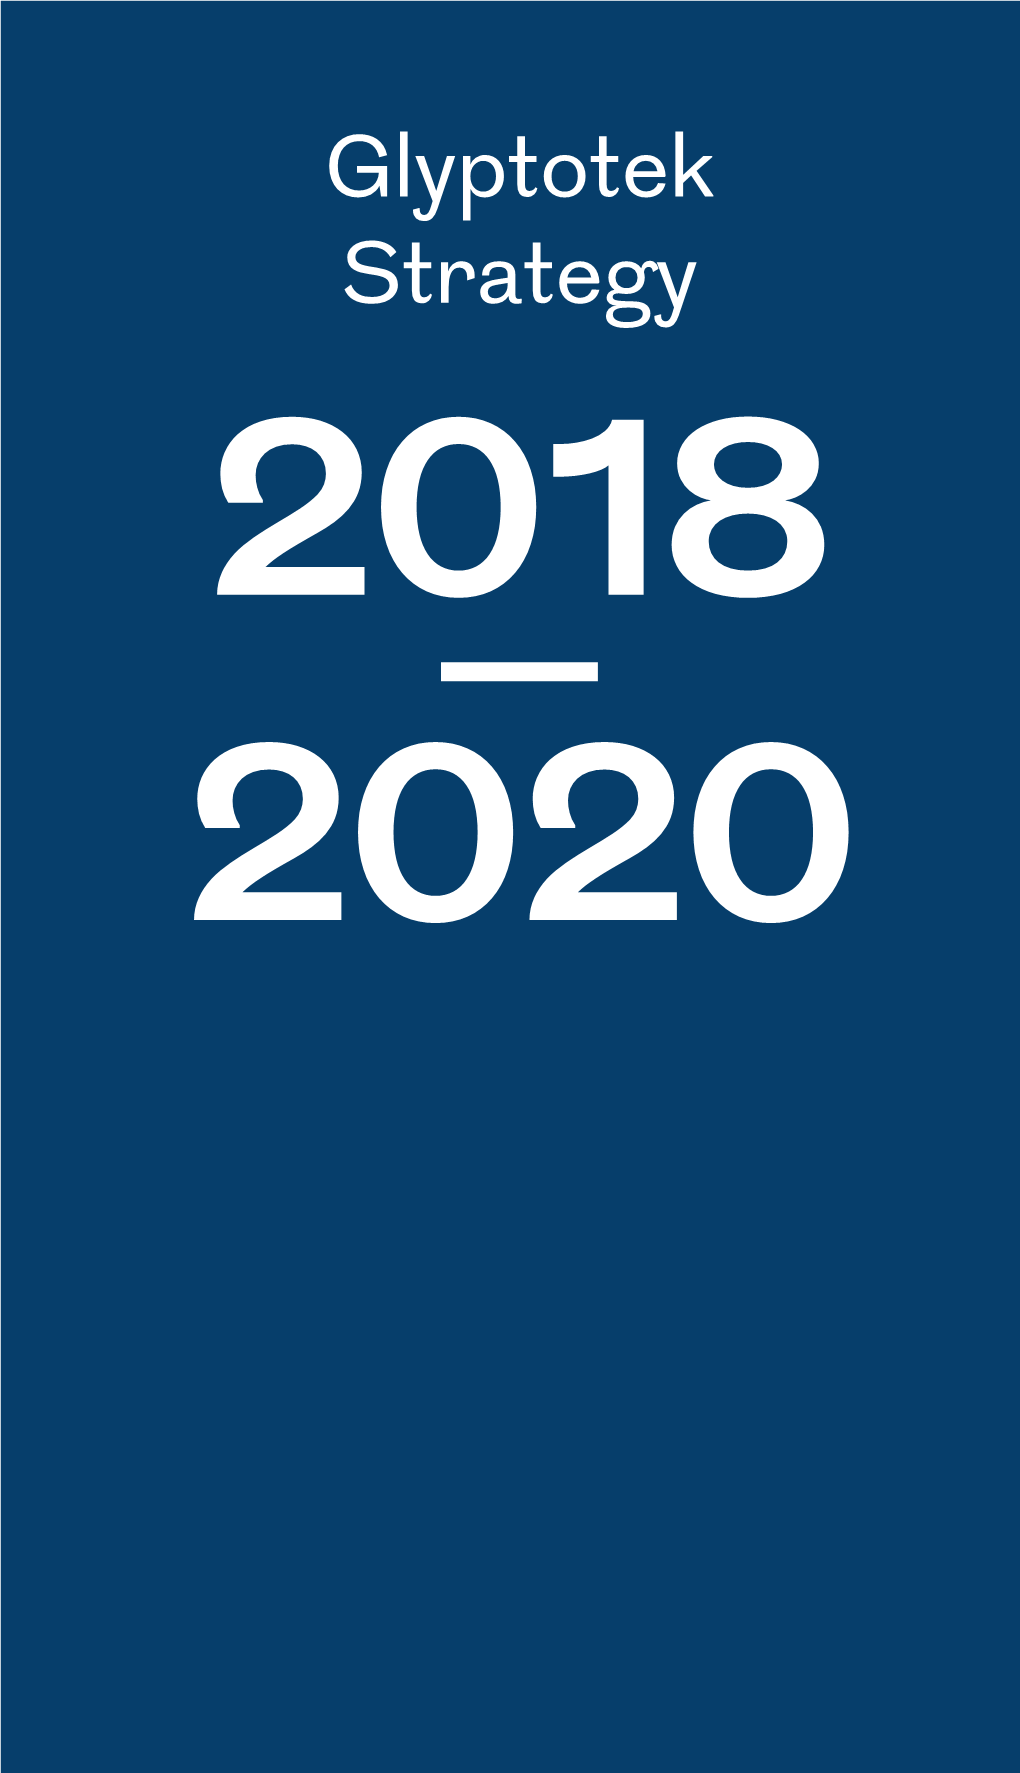 Glyptotek Strategy 2018 – 2020 Glyptotek Strategy 2018 – 2020 Introduction